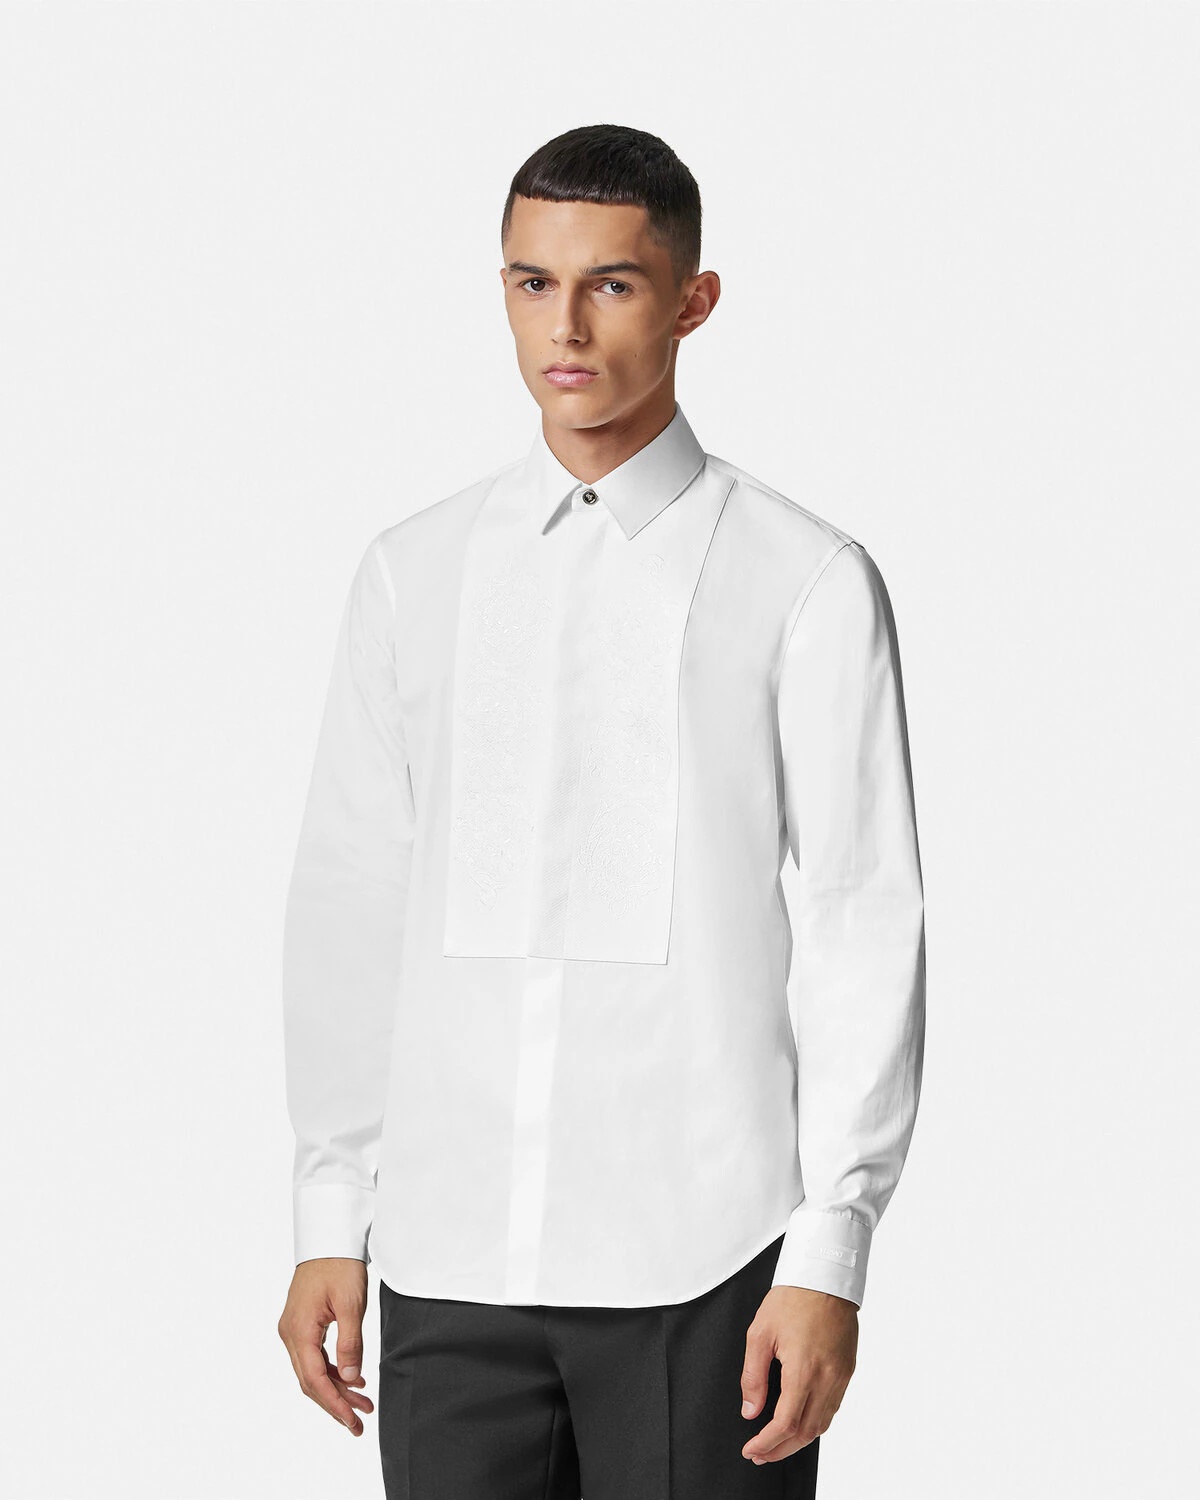 Barocco Formal Shirt - 4